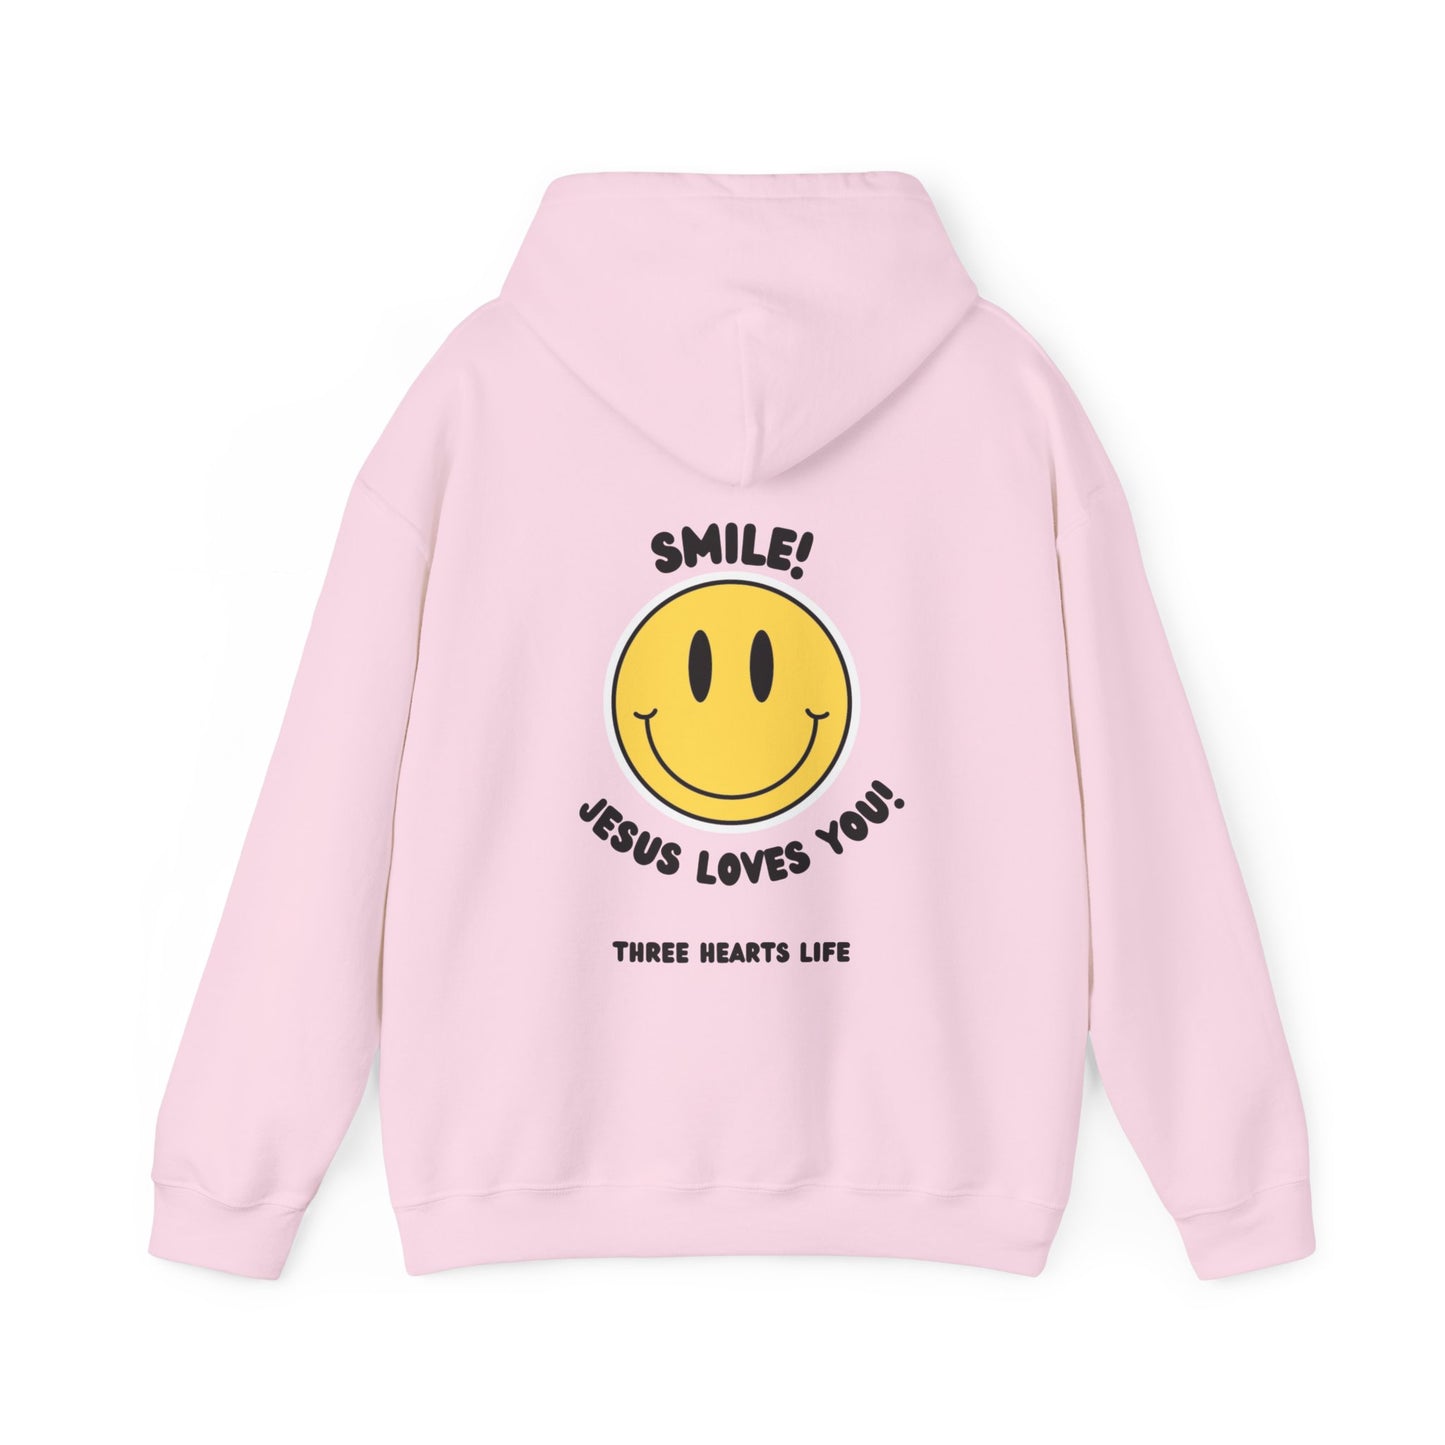 Smile! Jesus Loves You Hooded Sweatshirt